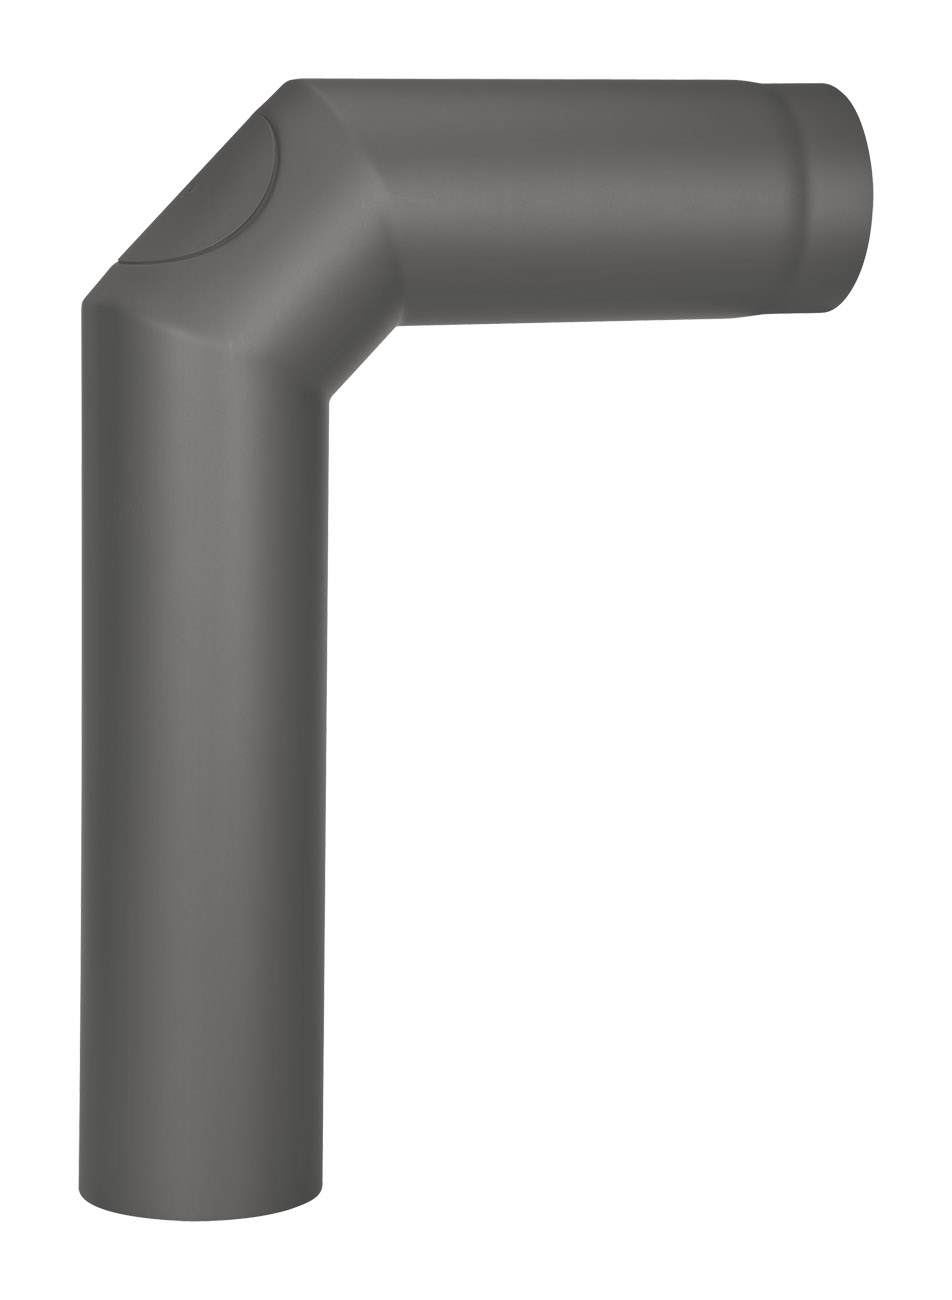 Anschlussrohr Stahl 2x 45° 700 x 500 mm Ø 150 mm schwarz mit Tür